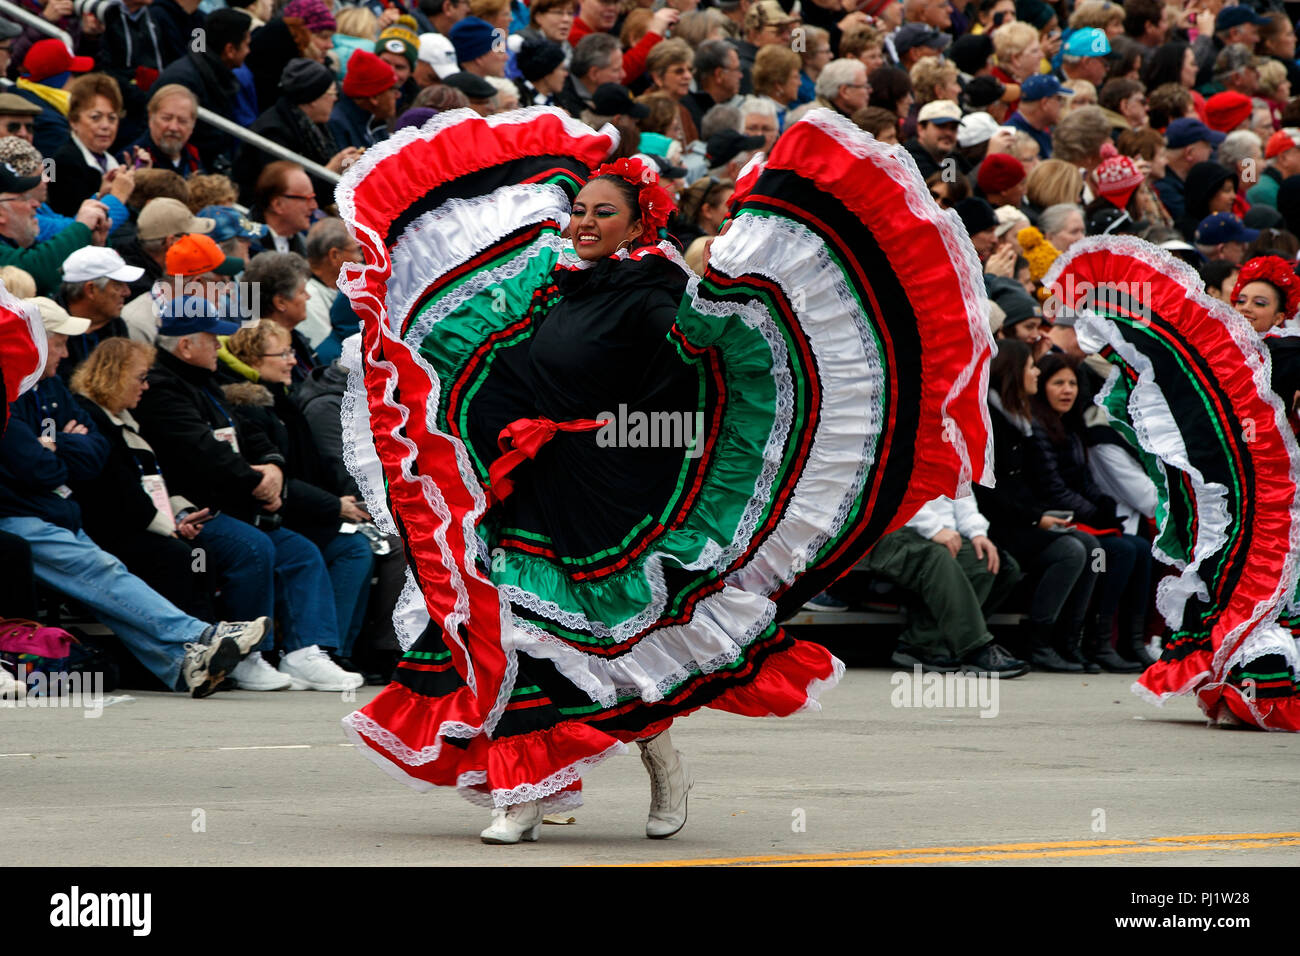 Mexikanische traditionelle Tänzer auf der Route der Turnier 2017 von Roses Parade, Rose Parade, Pasadena, Kalifornien, Vereinigte Staaten von Amerika Stockfoto